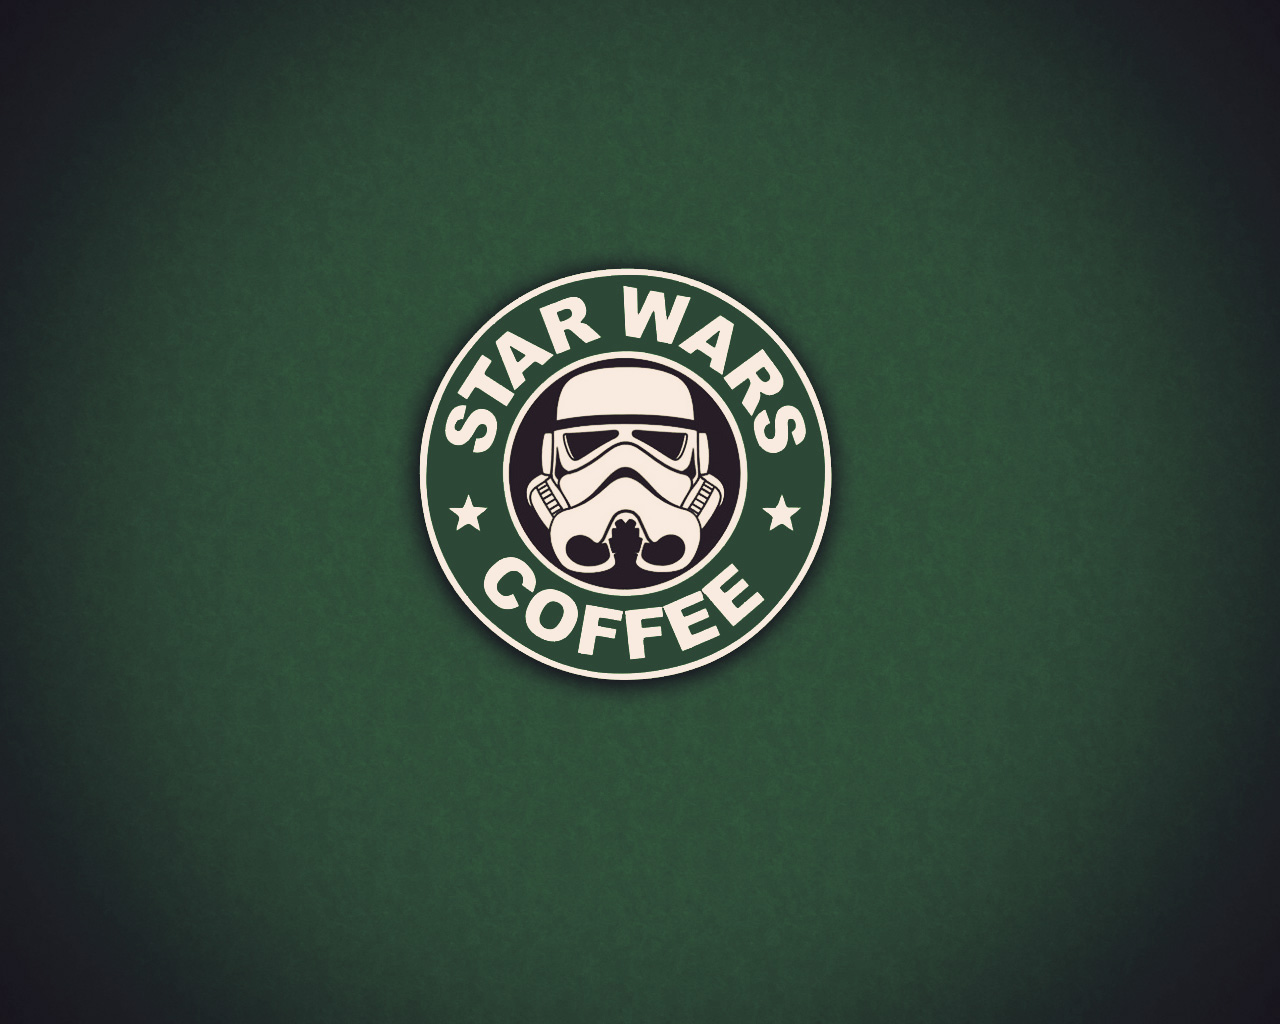 Star Wars Coffee by Zeerooh on DeviantArt